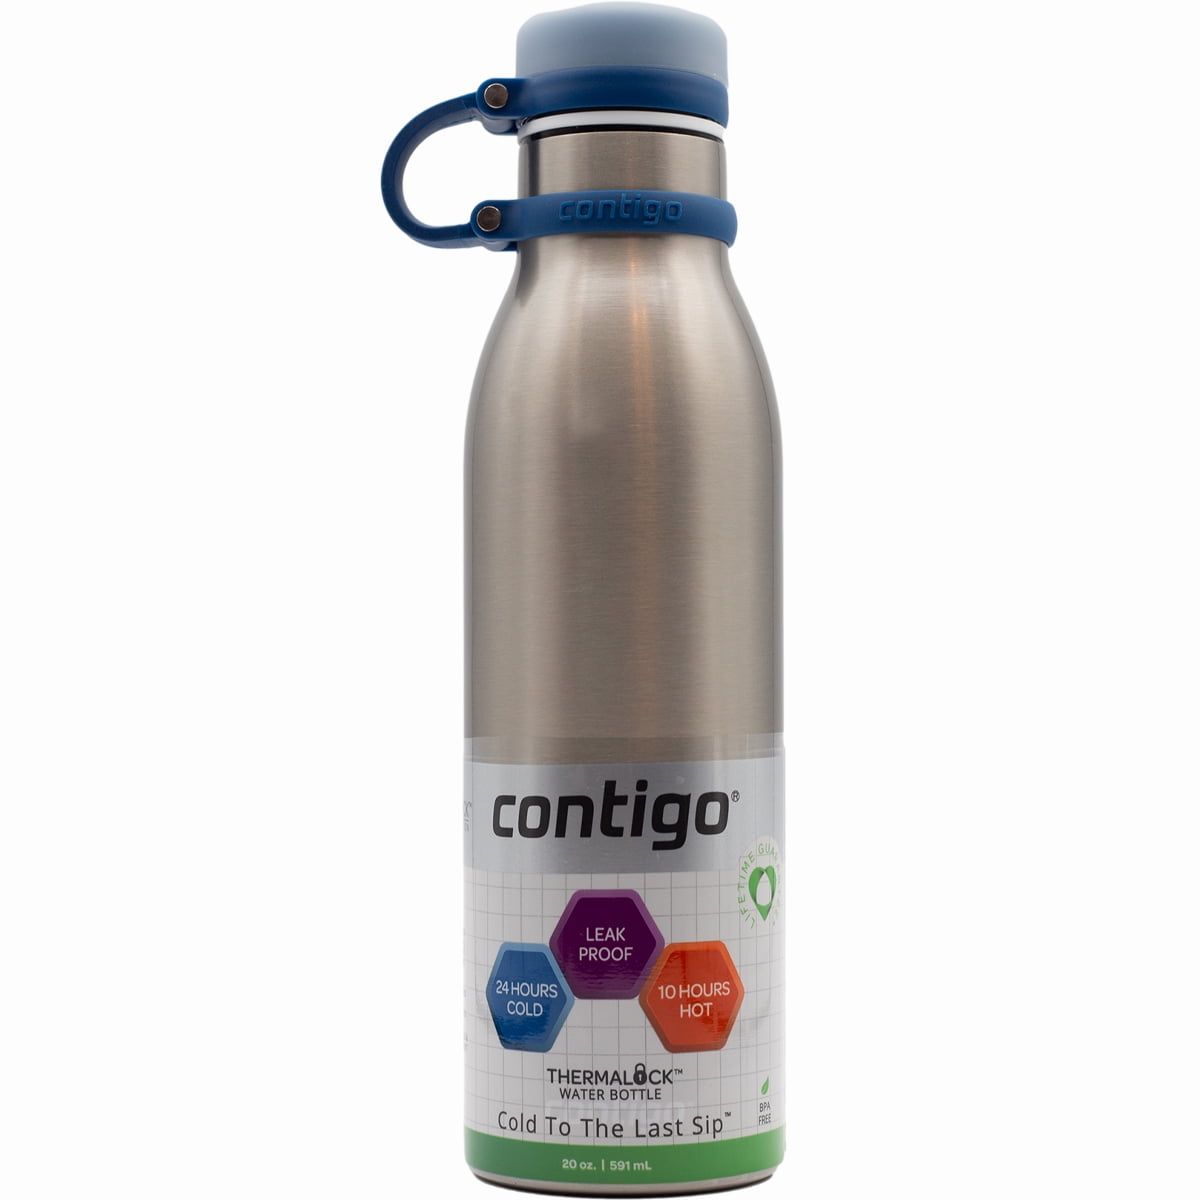 Contigo water bottle • Compare & find best price now »